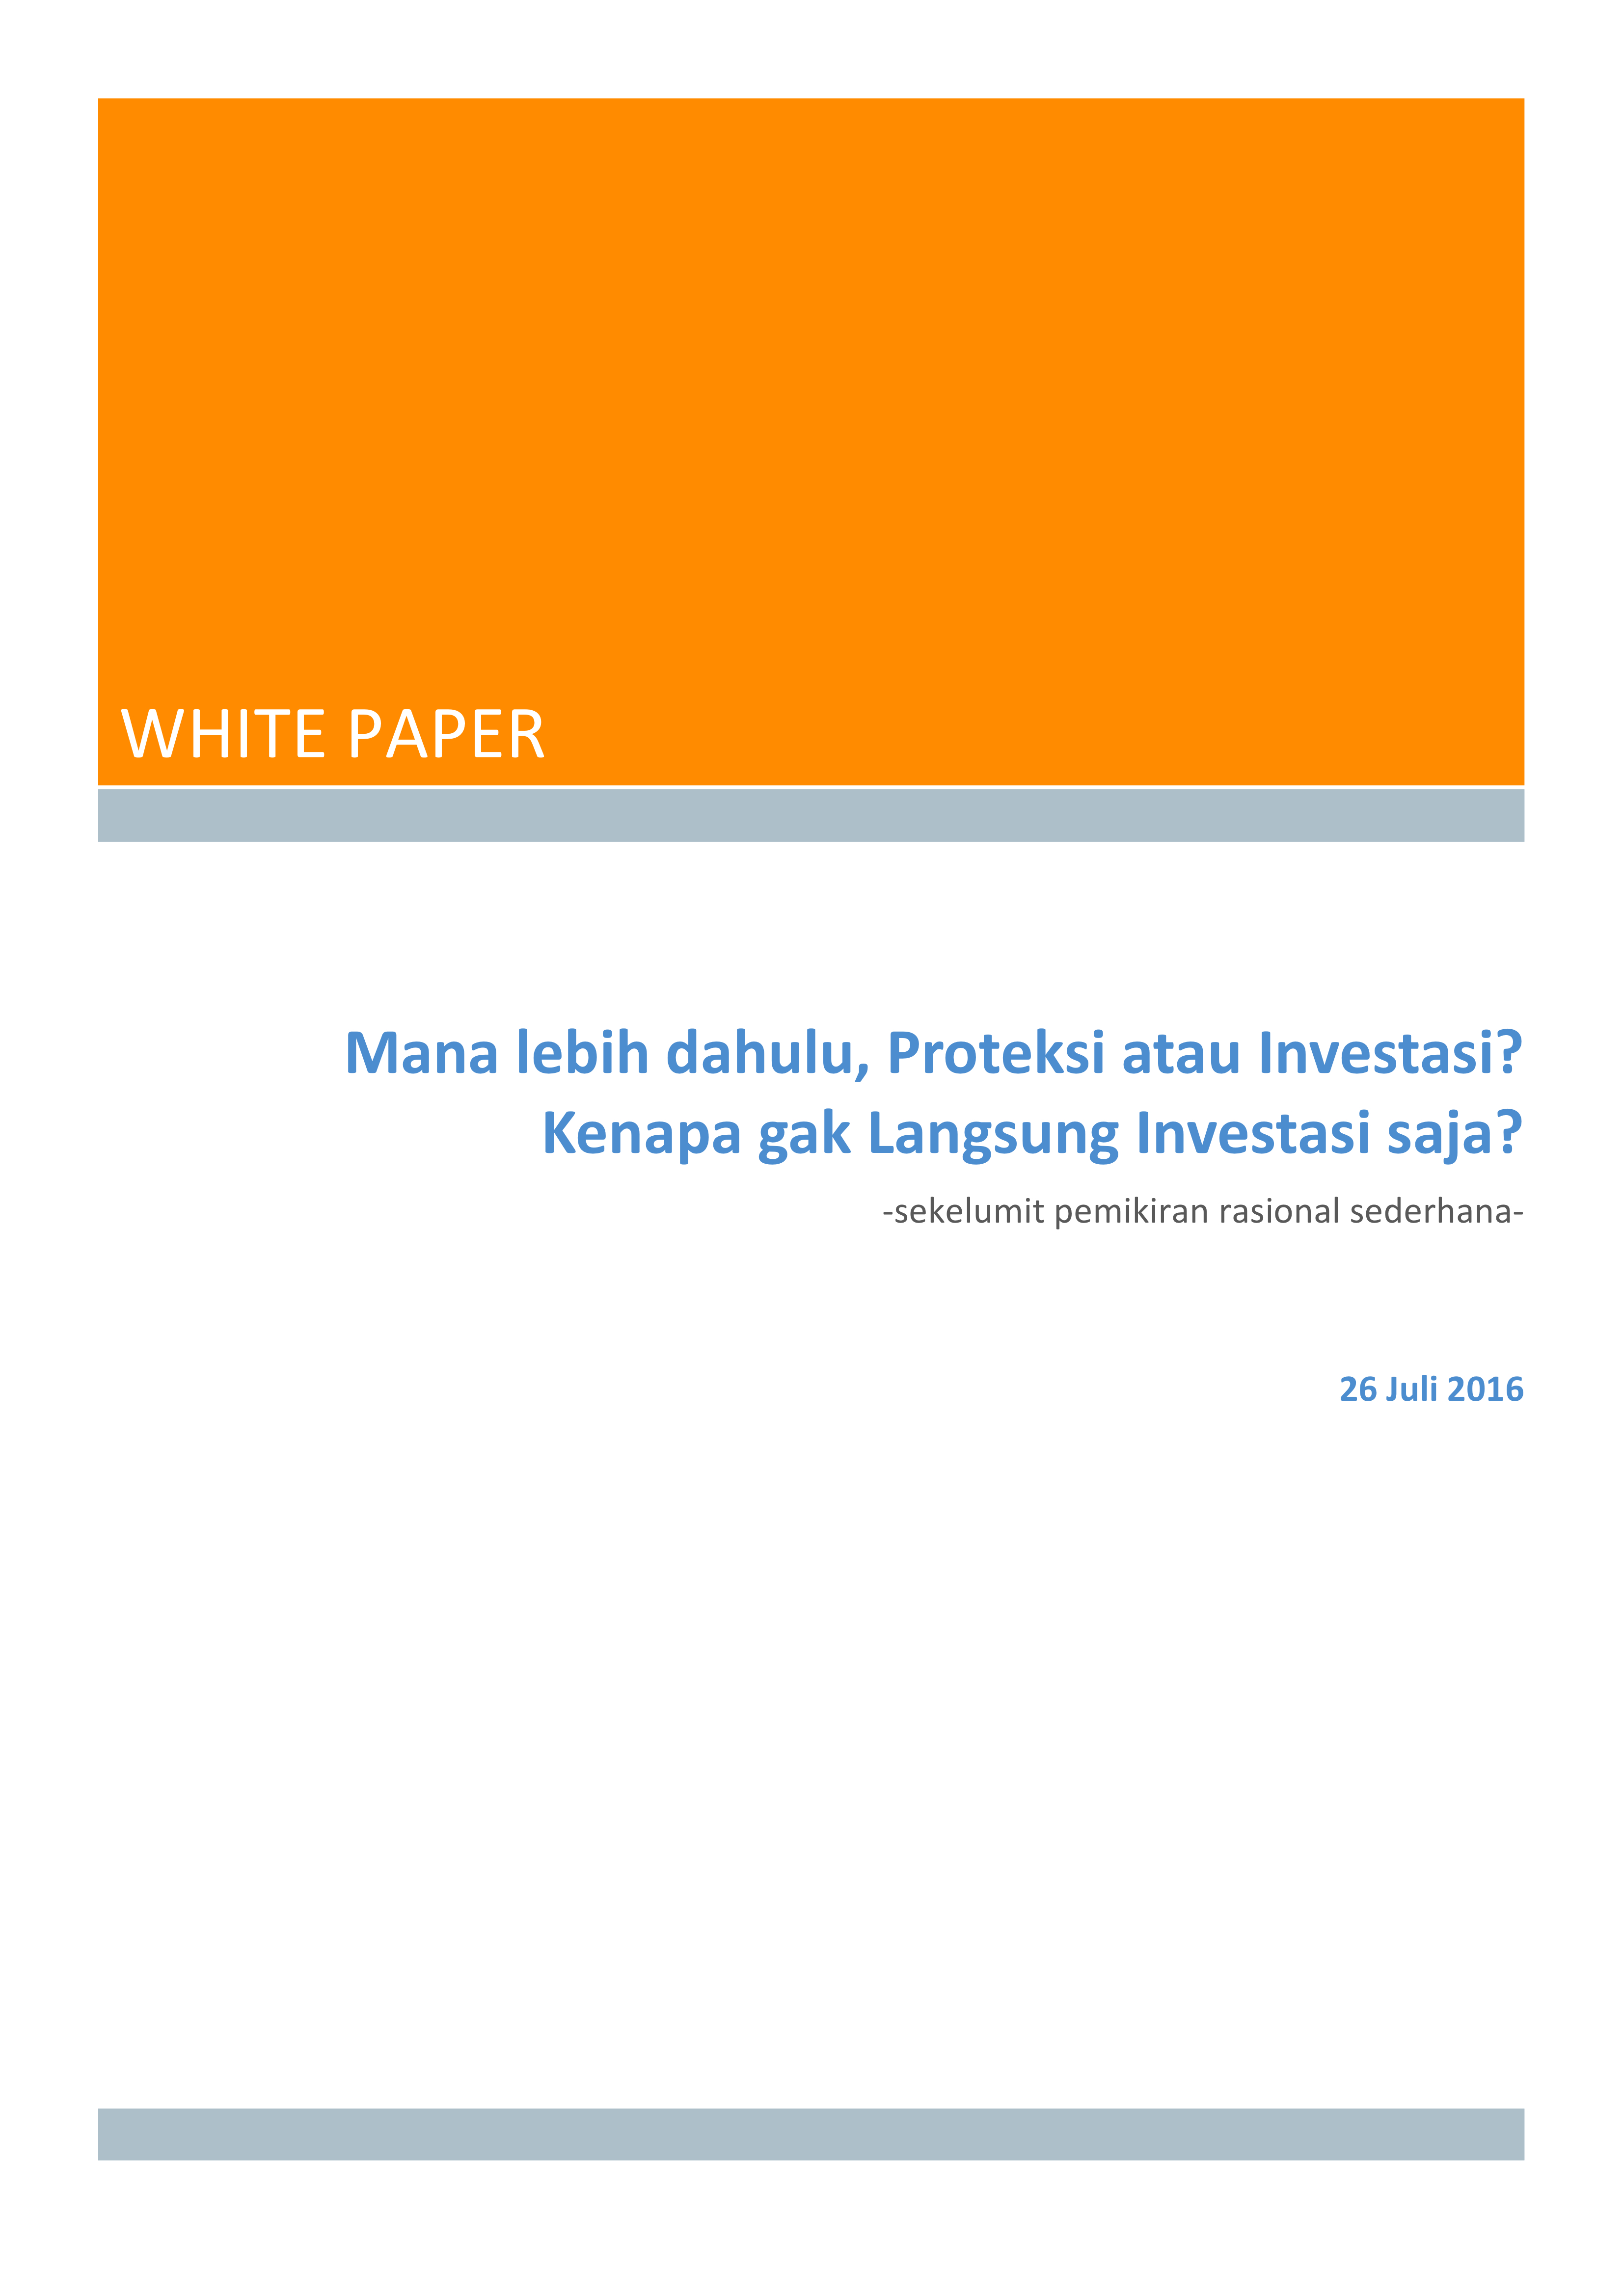 White Paper: Mana lebih dahulu, Proteksi atau Investasi? Kenapa gak Langsung Investasi saja?